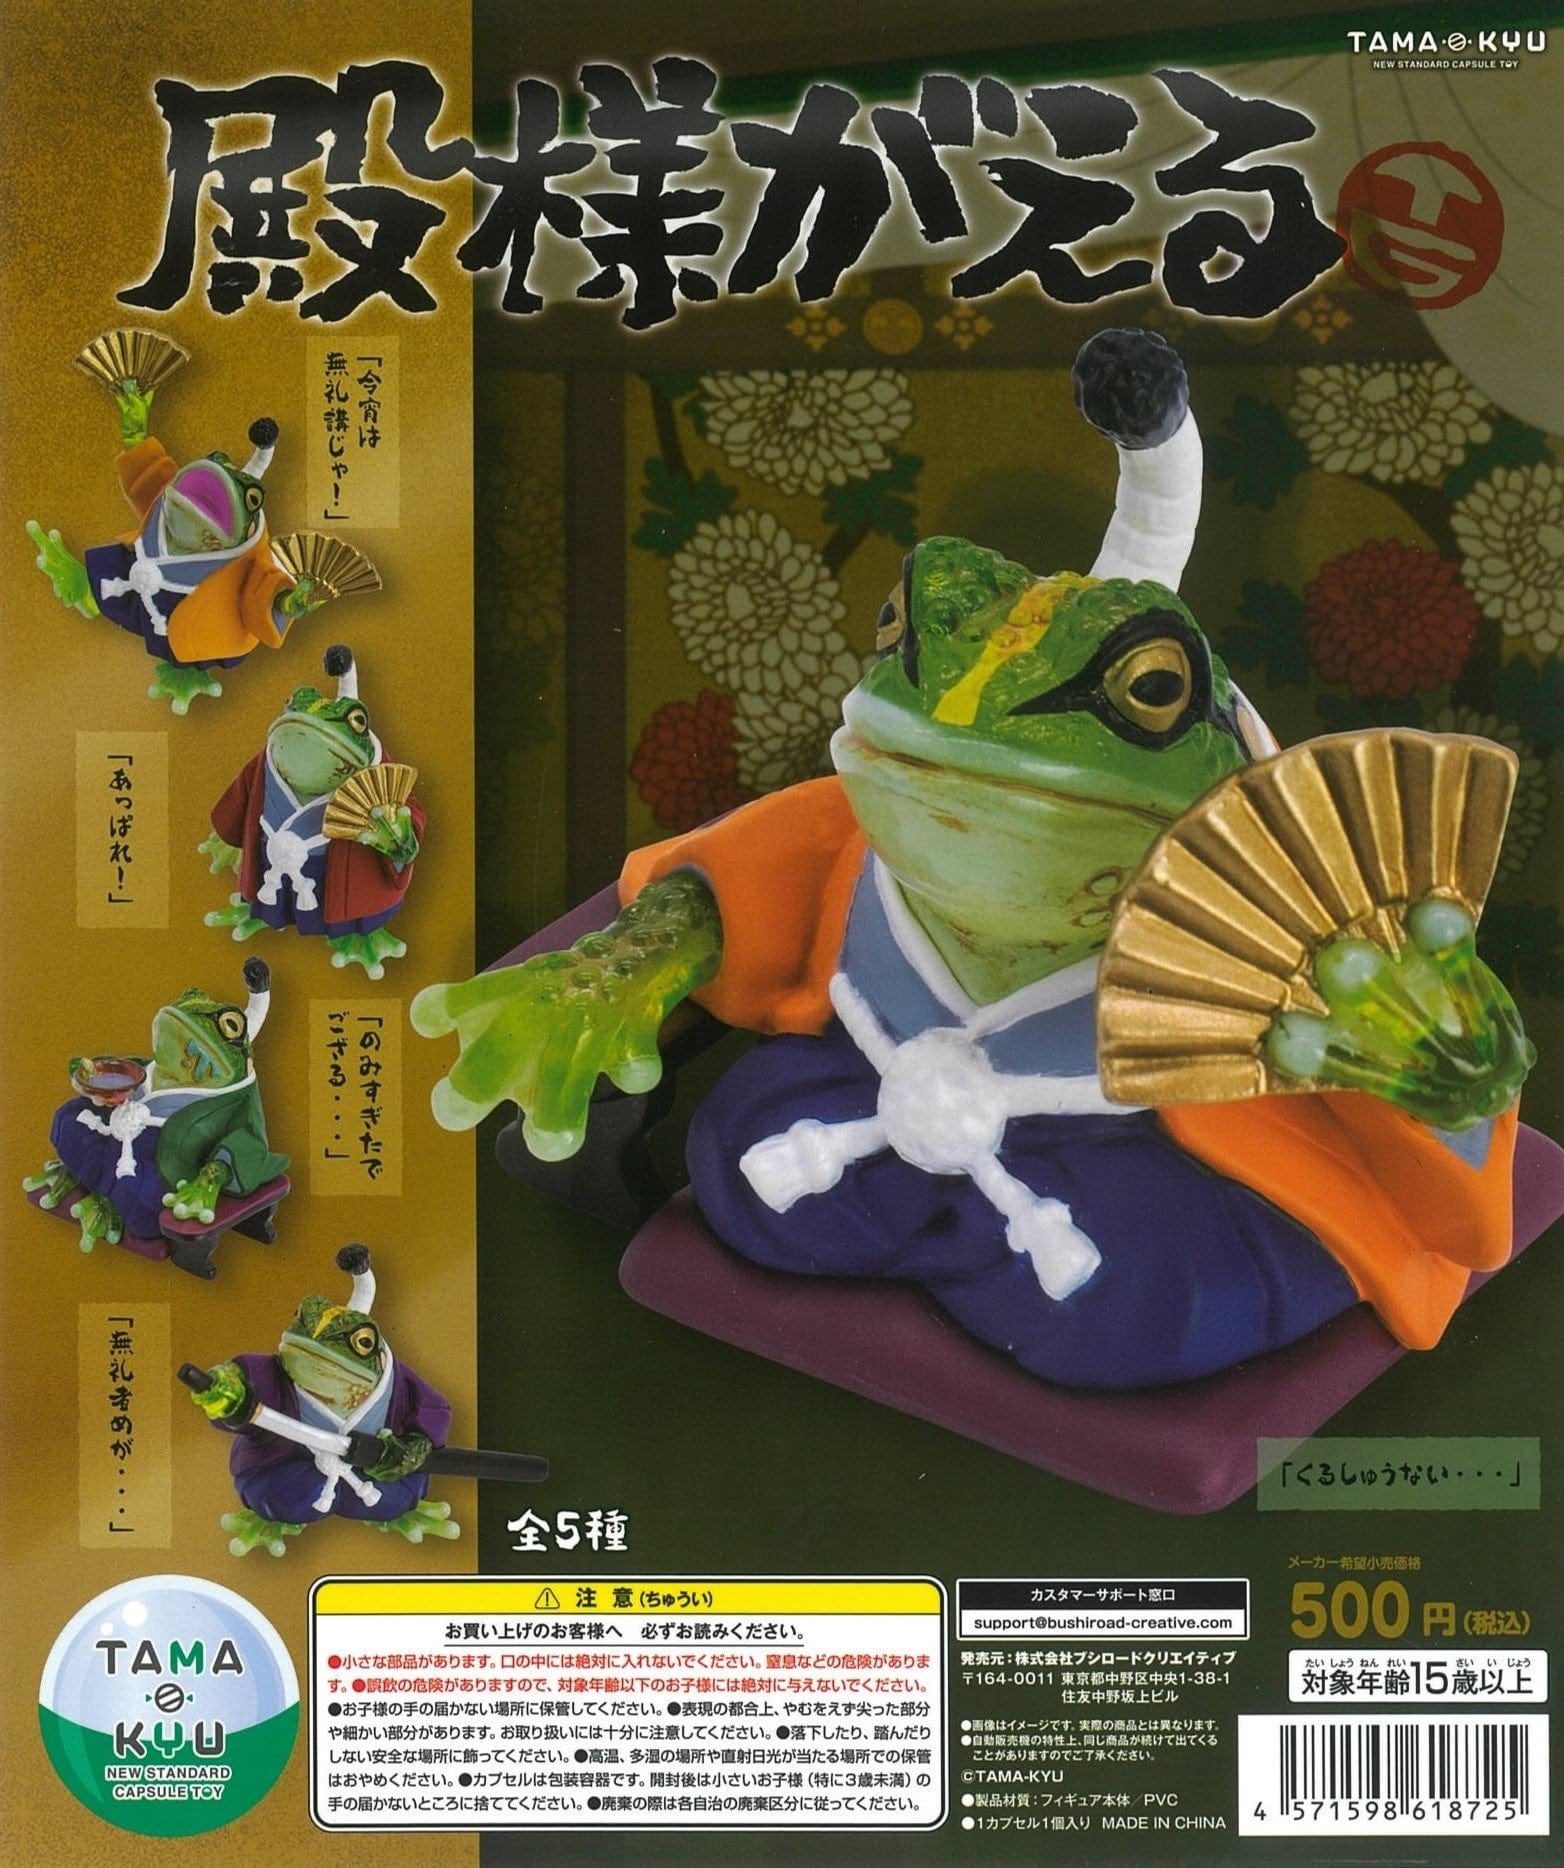 Bushiroad Creative CP1870 TAMA-KYU Tonosama Frog